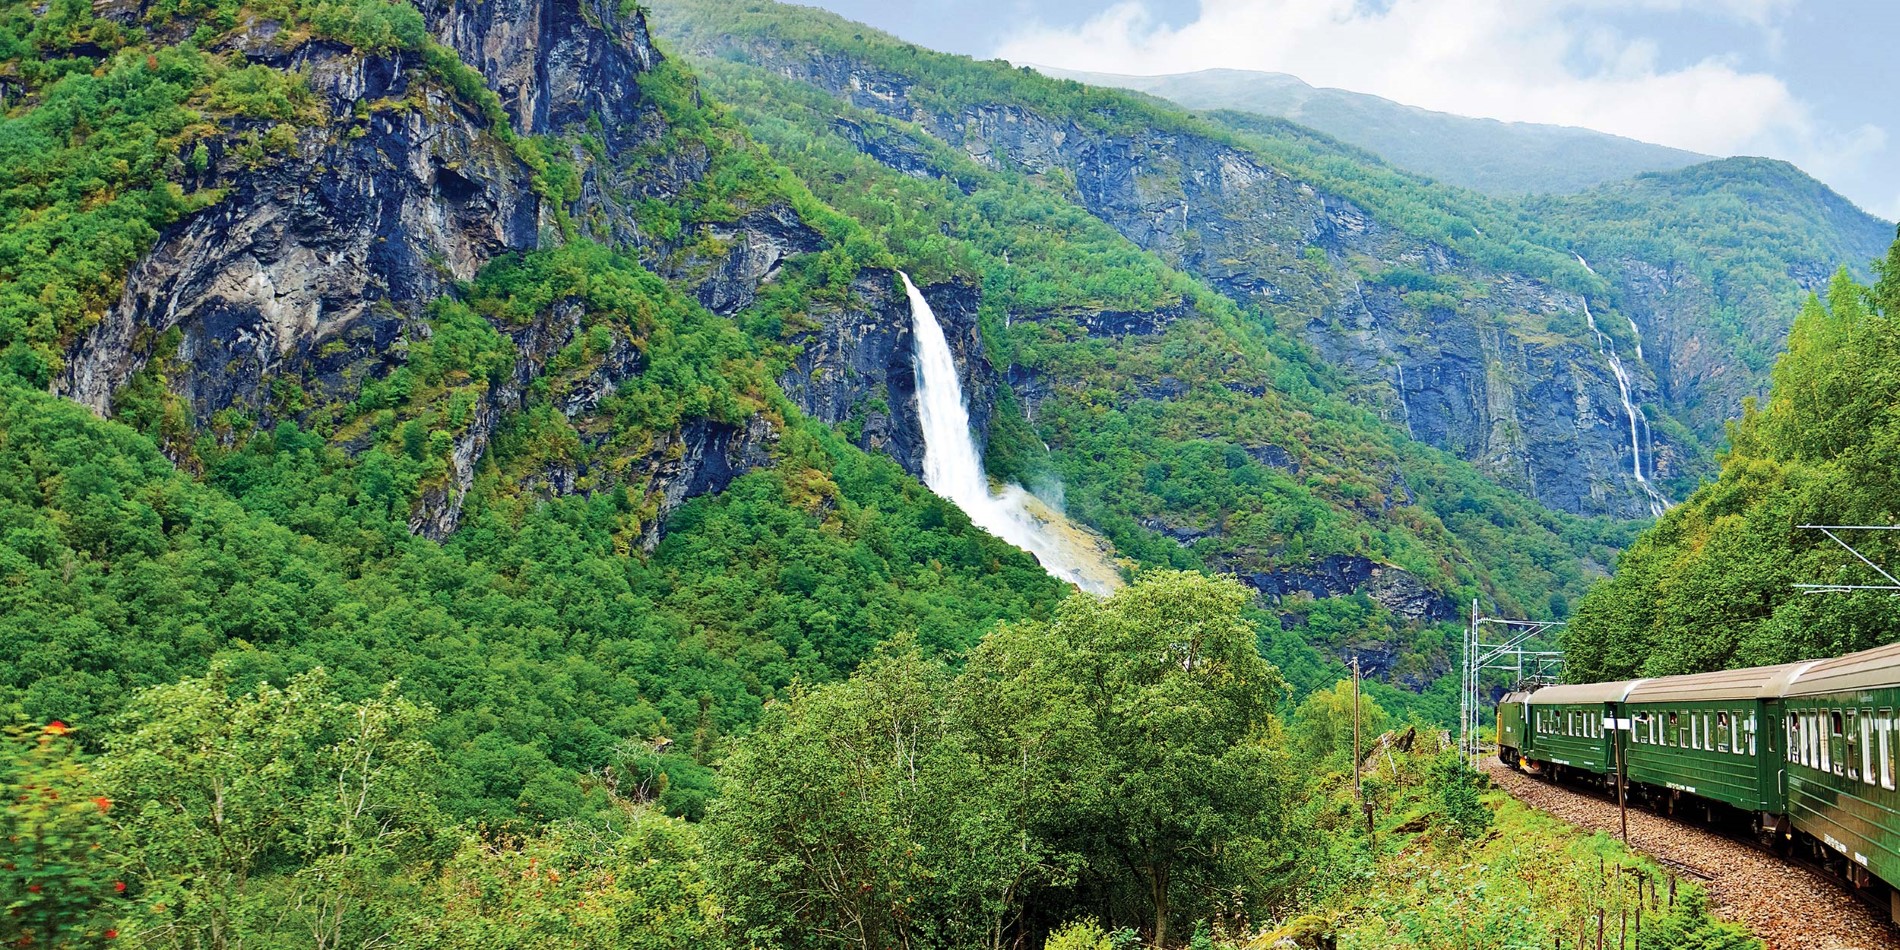 Opplev en av de mest populære turene i Norge – Flåmsbana